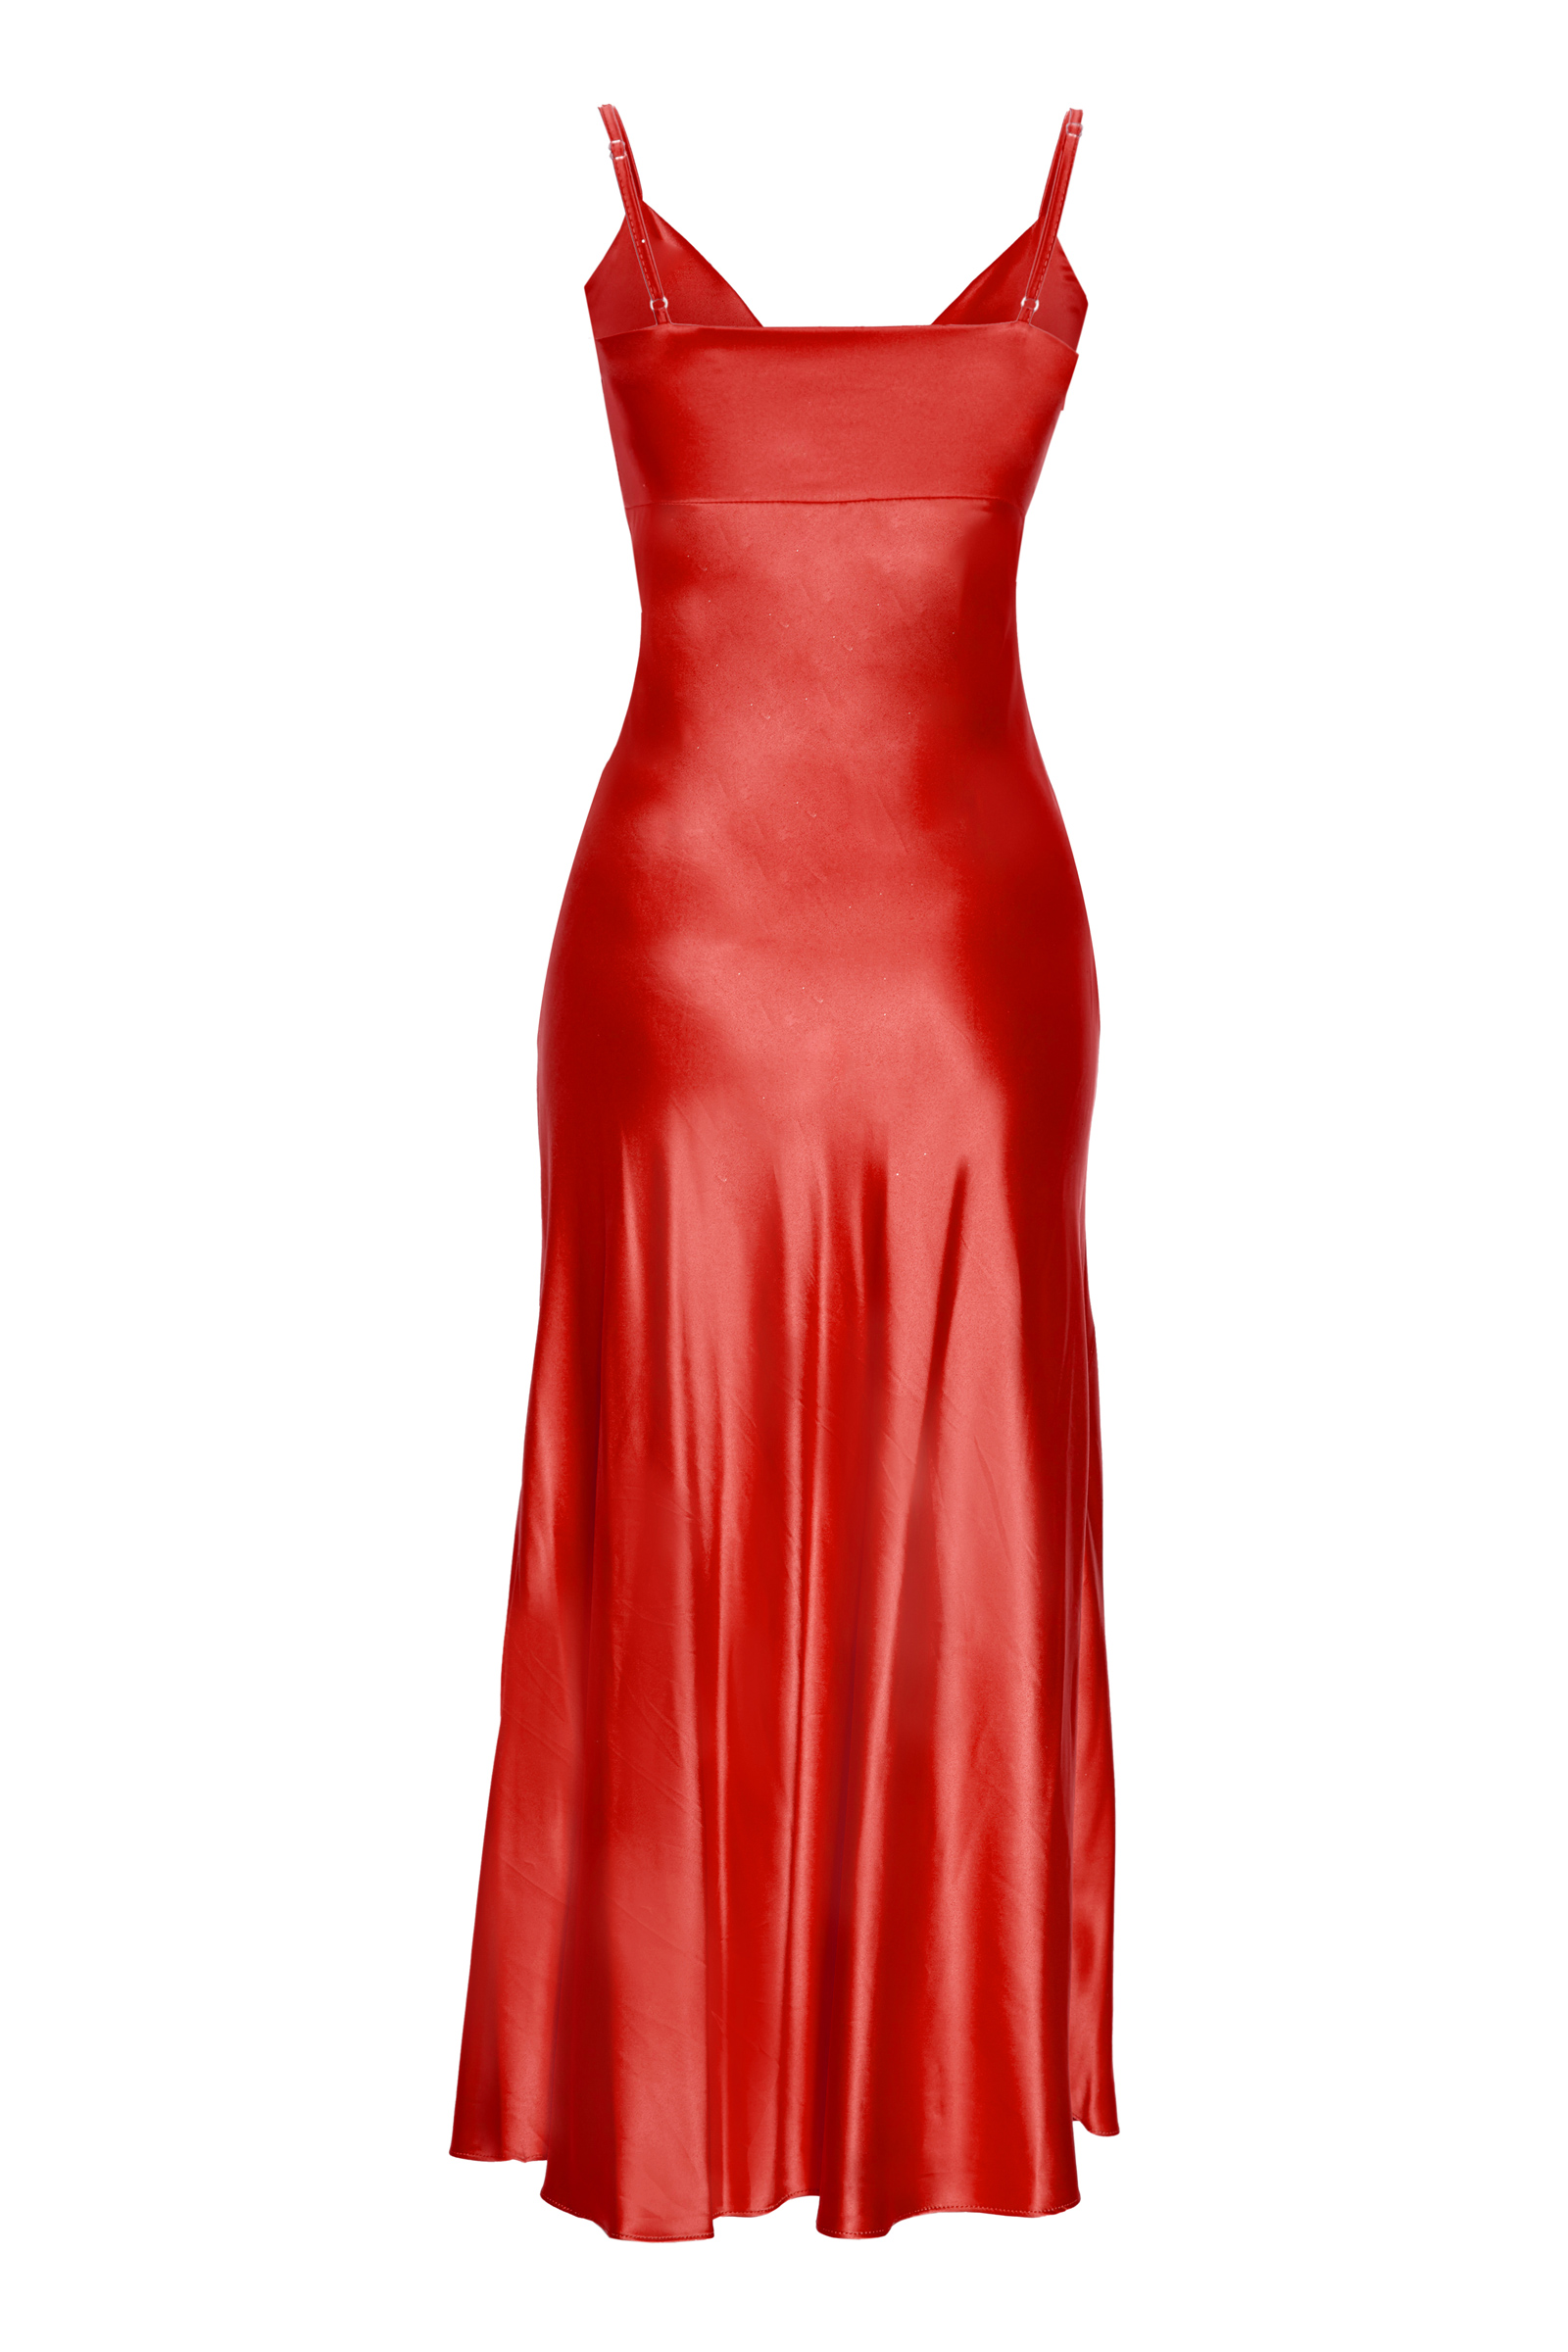 Kırmızı saten kolsuz orta boy elbise